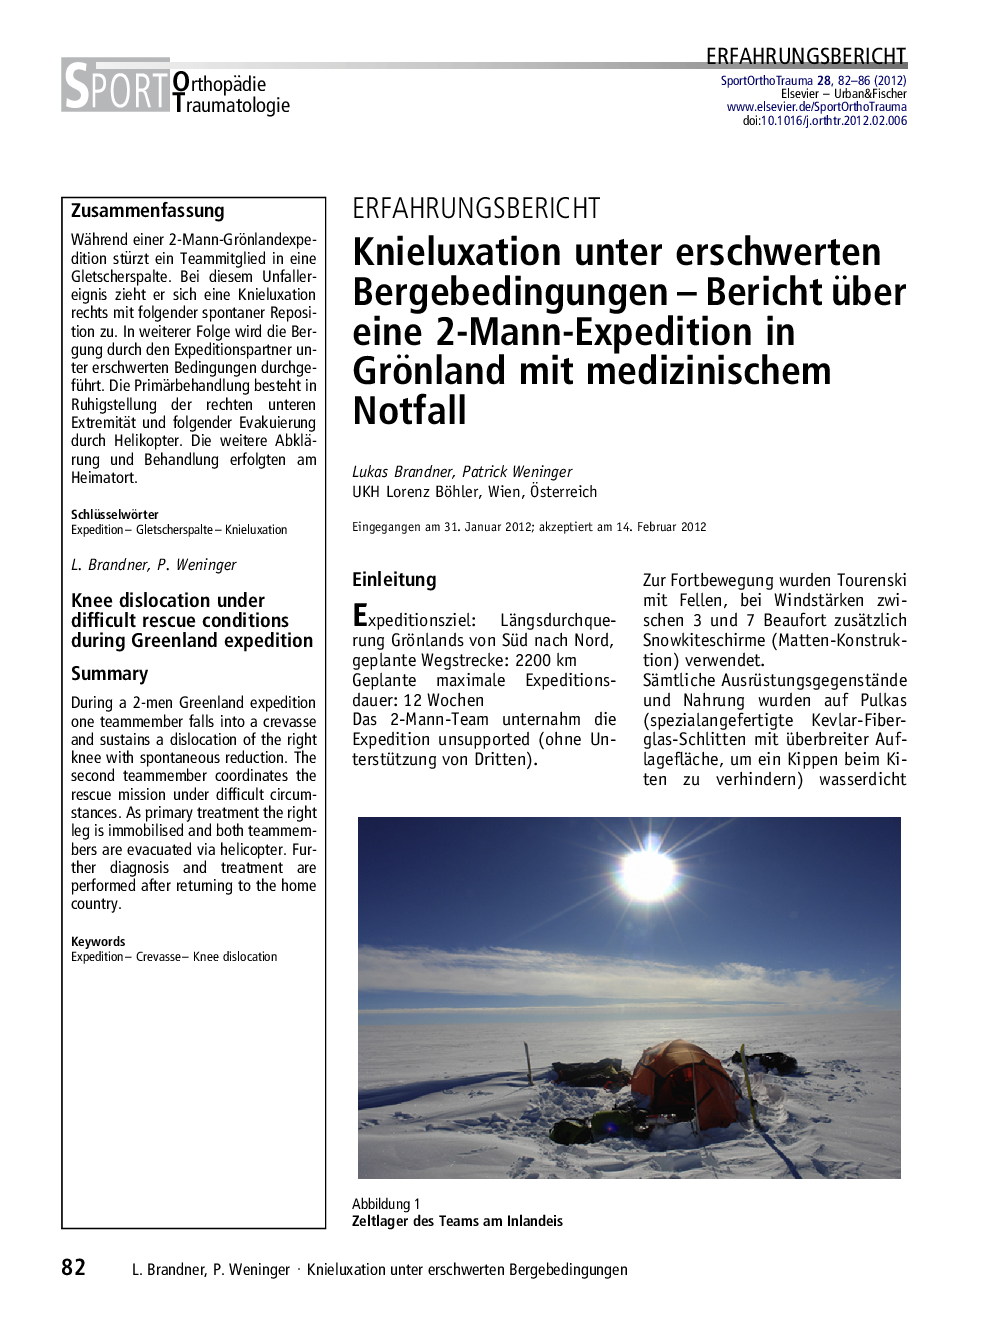 Knieluxation unter erschwerten Bergebedingungen – Bericht über eine 2-Mann-Expedition in Grönland mit medizinischem Notfall